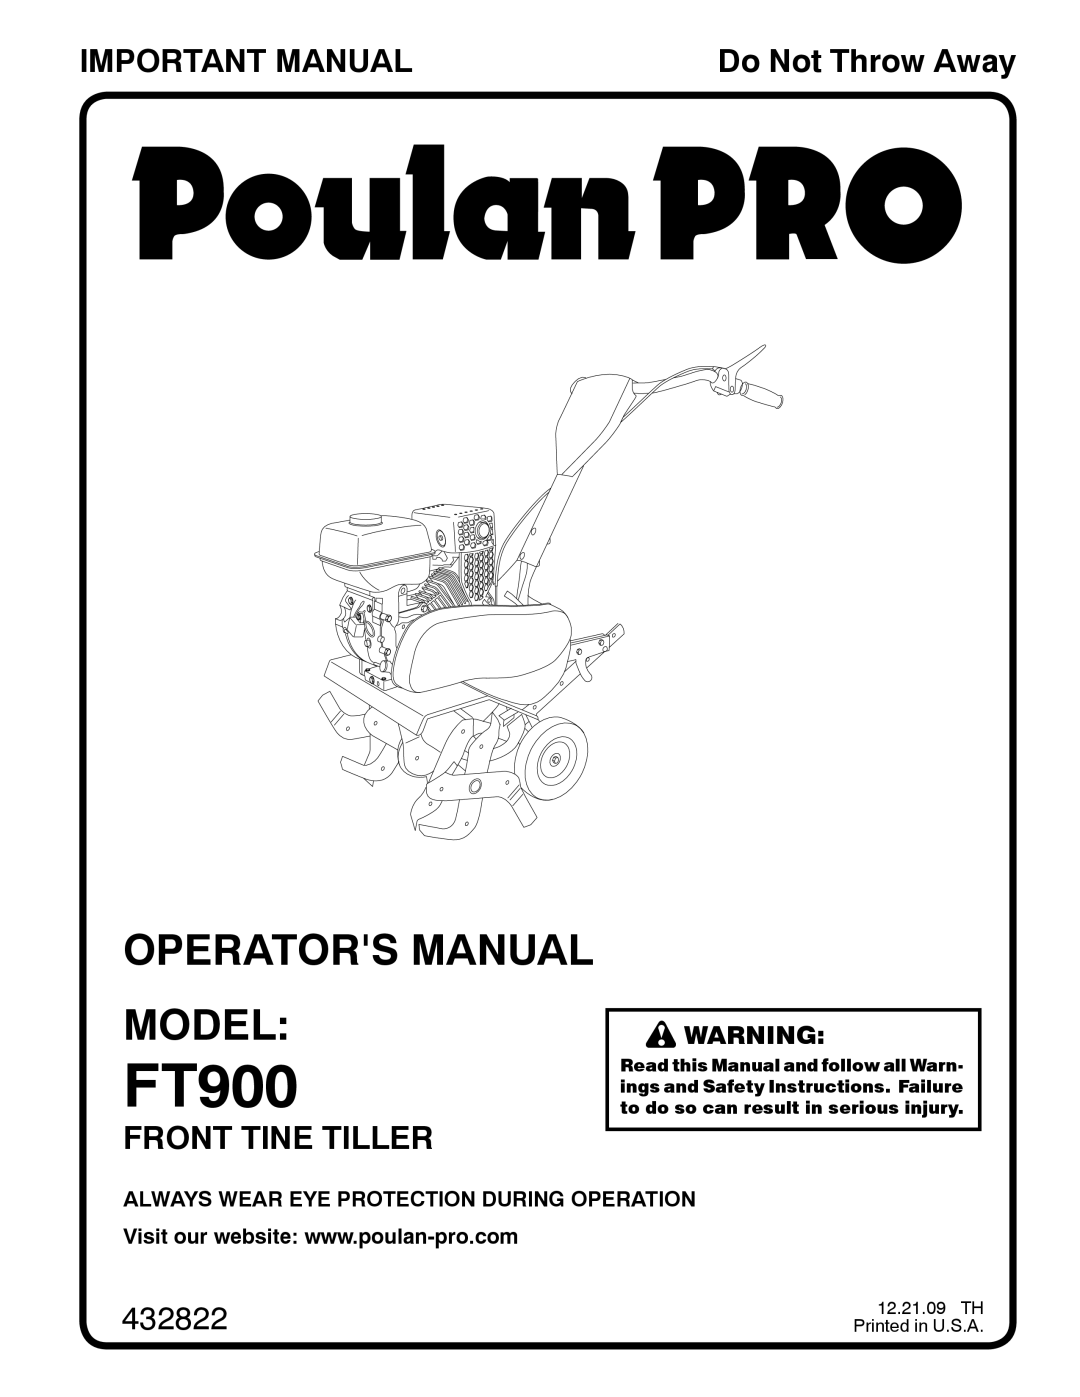 Poulan 432822, 96082001900 manual FT900, Operators Manual Model, Important Manual, Front Tine Tiller, Do Not Throw Away 